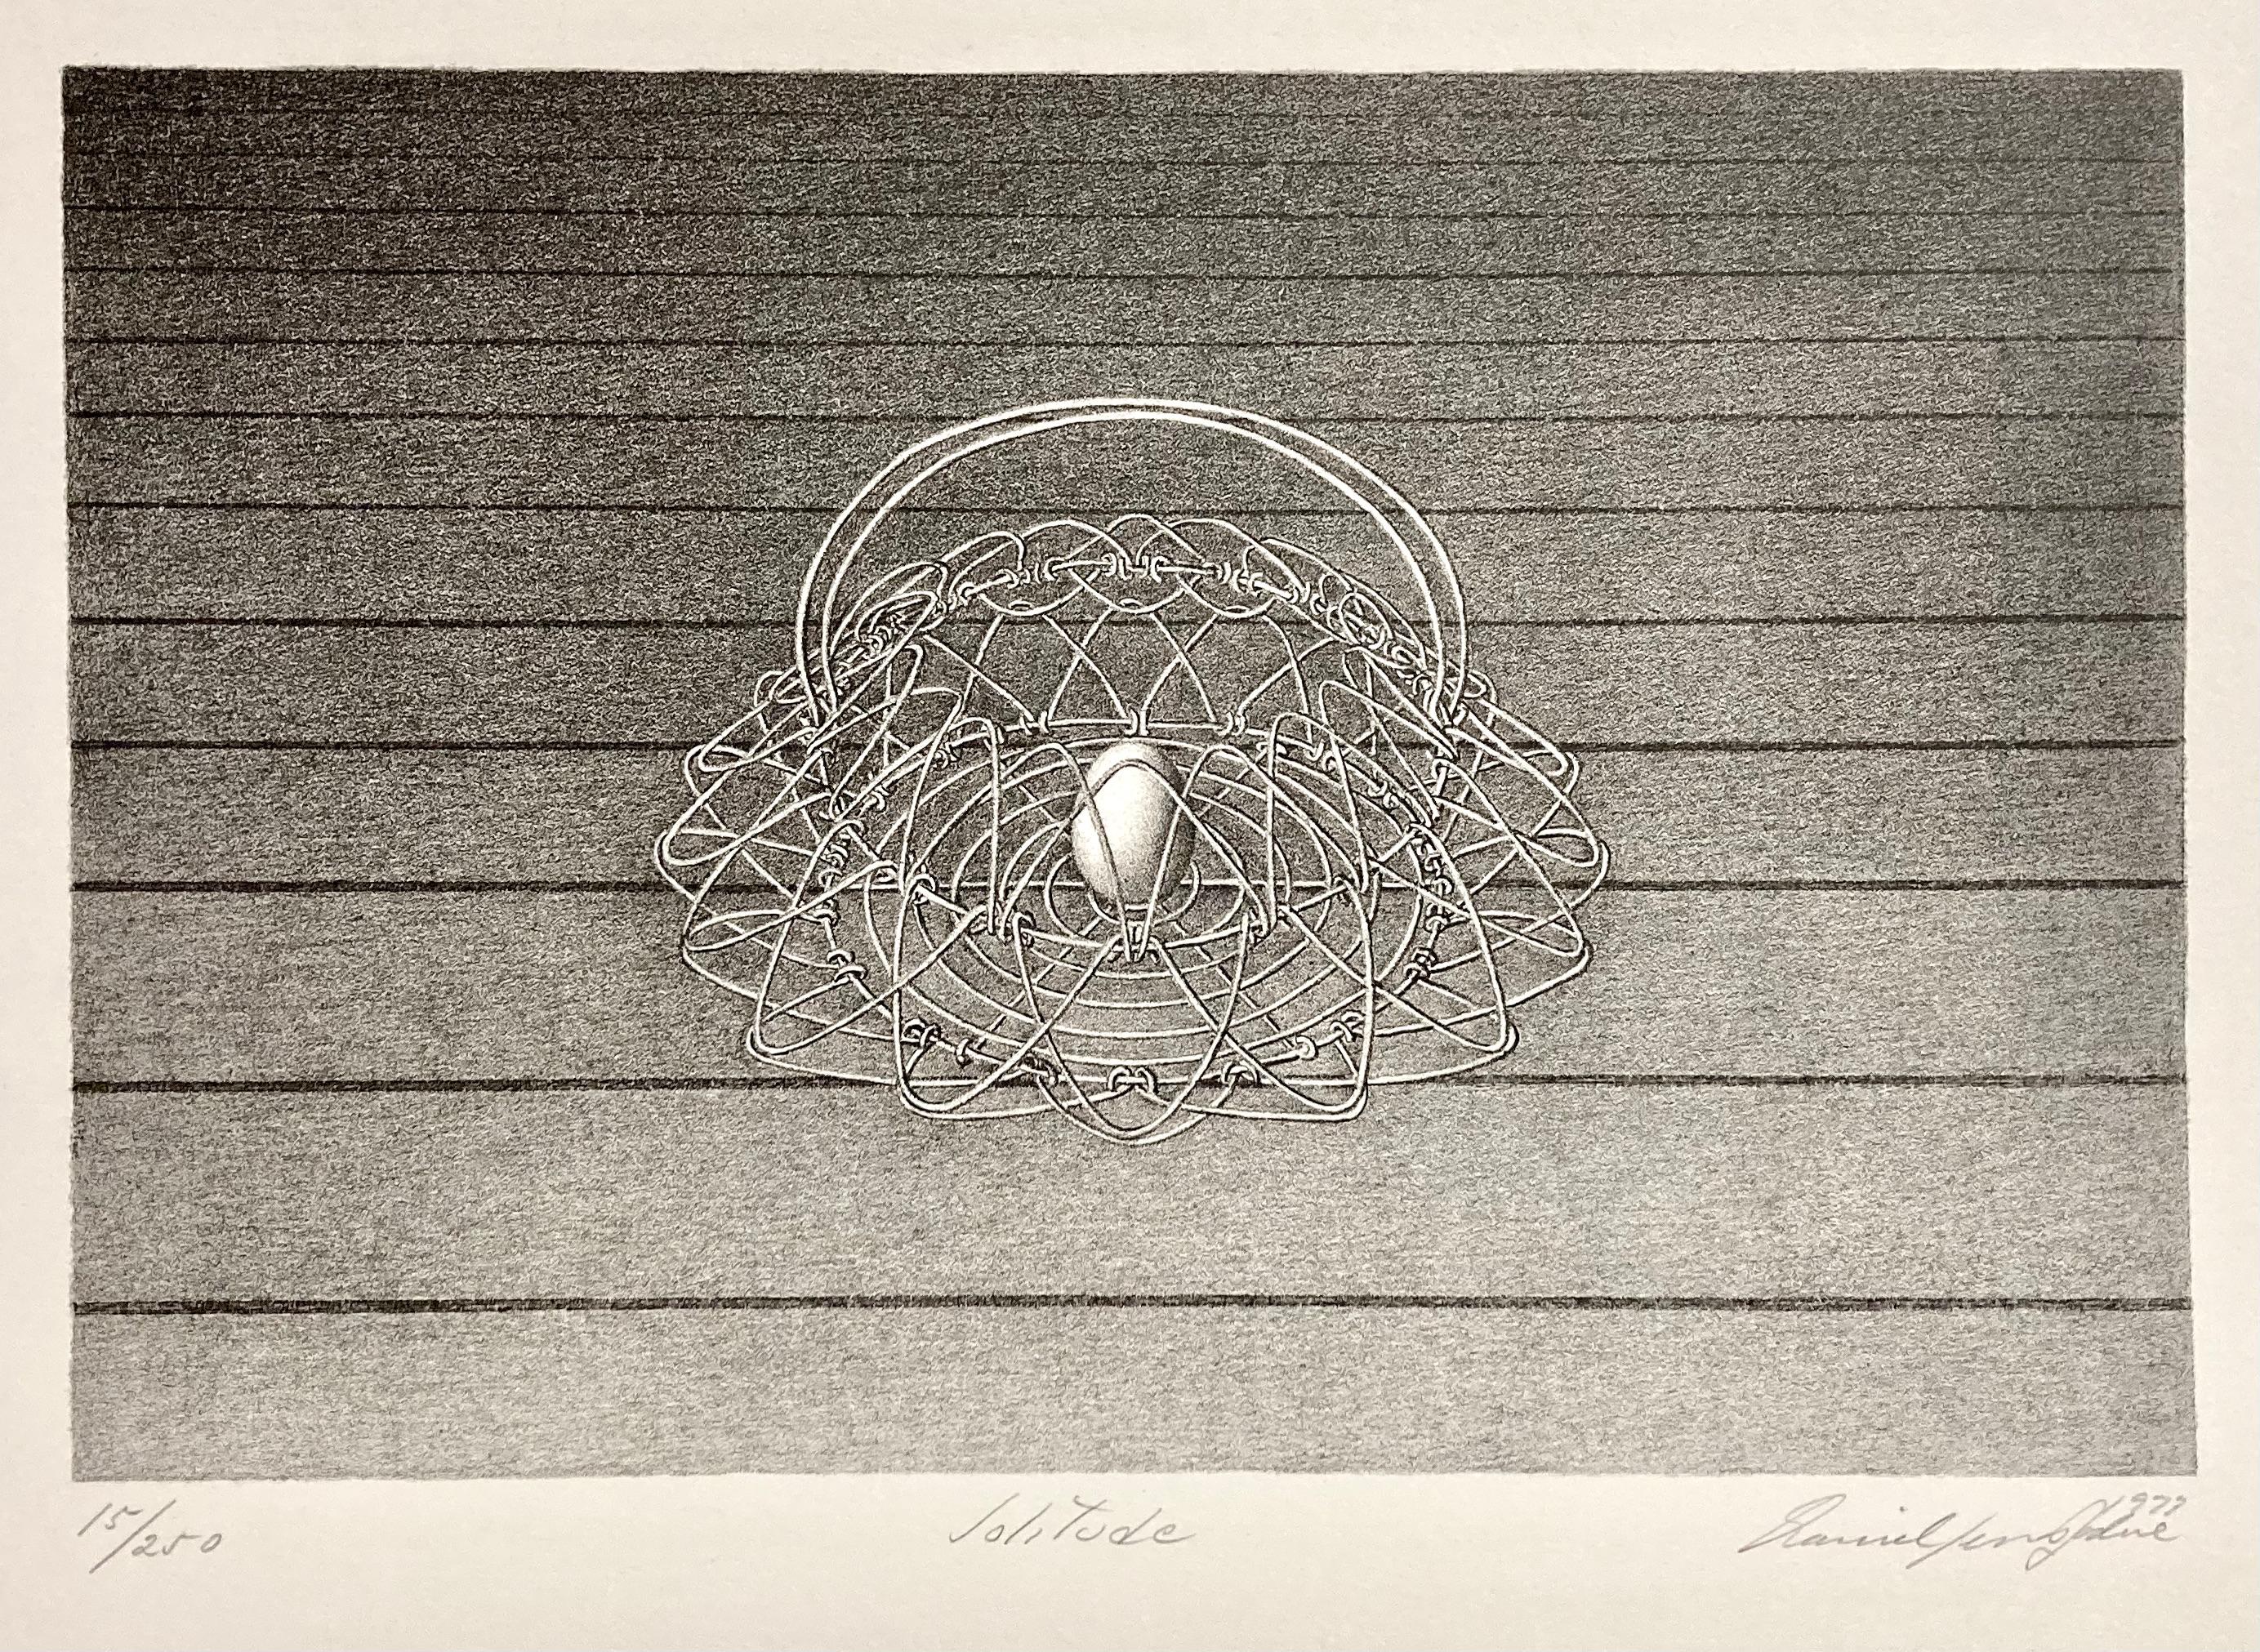 Daniel Serra-Badue war ein kubanischer Künstler, der in New York City arbeitete. Sein Werk zeichnet sich nicht nur durch sein surrealistisches Sujet aus (ein einzelnes Ei in einem Drahtkorb in den Tiefen des Weltraums), sondern auch durch die